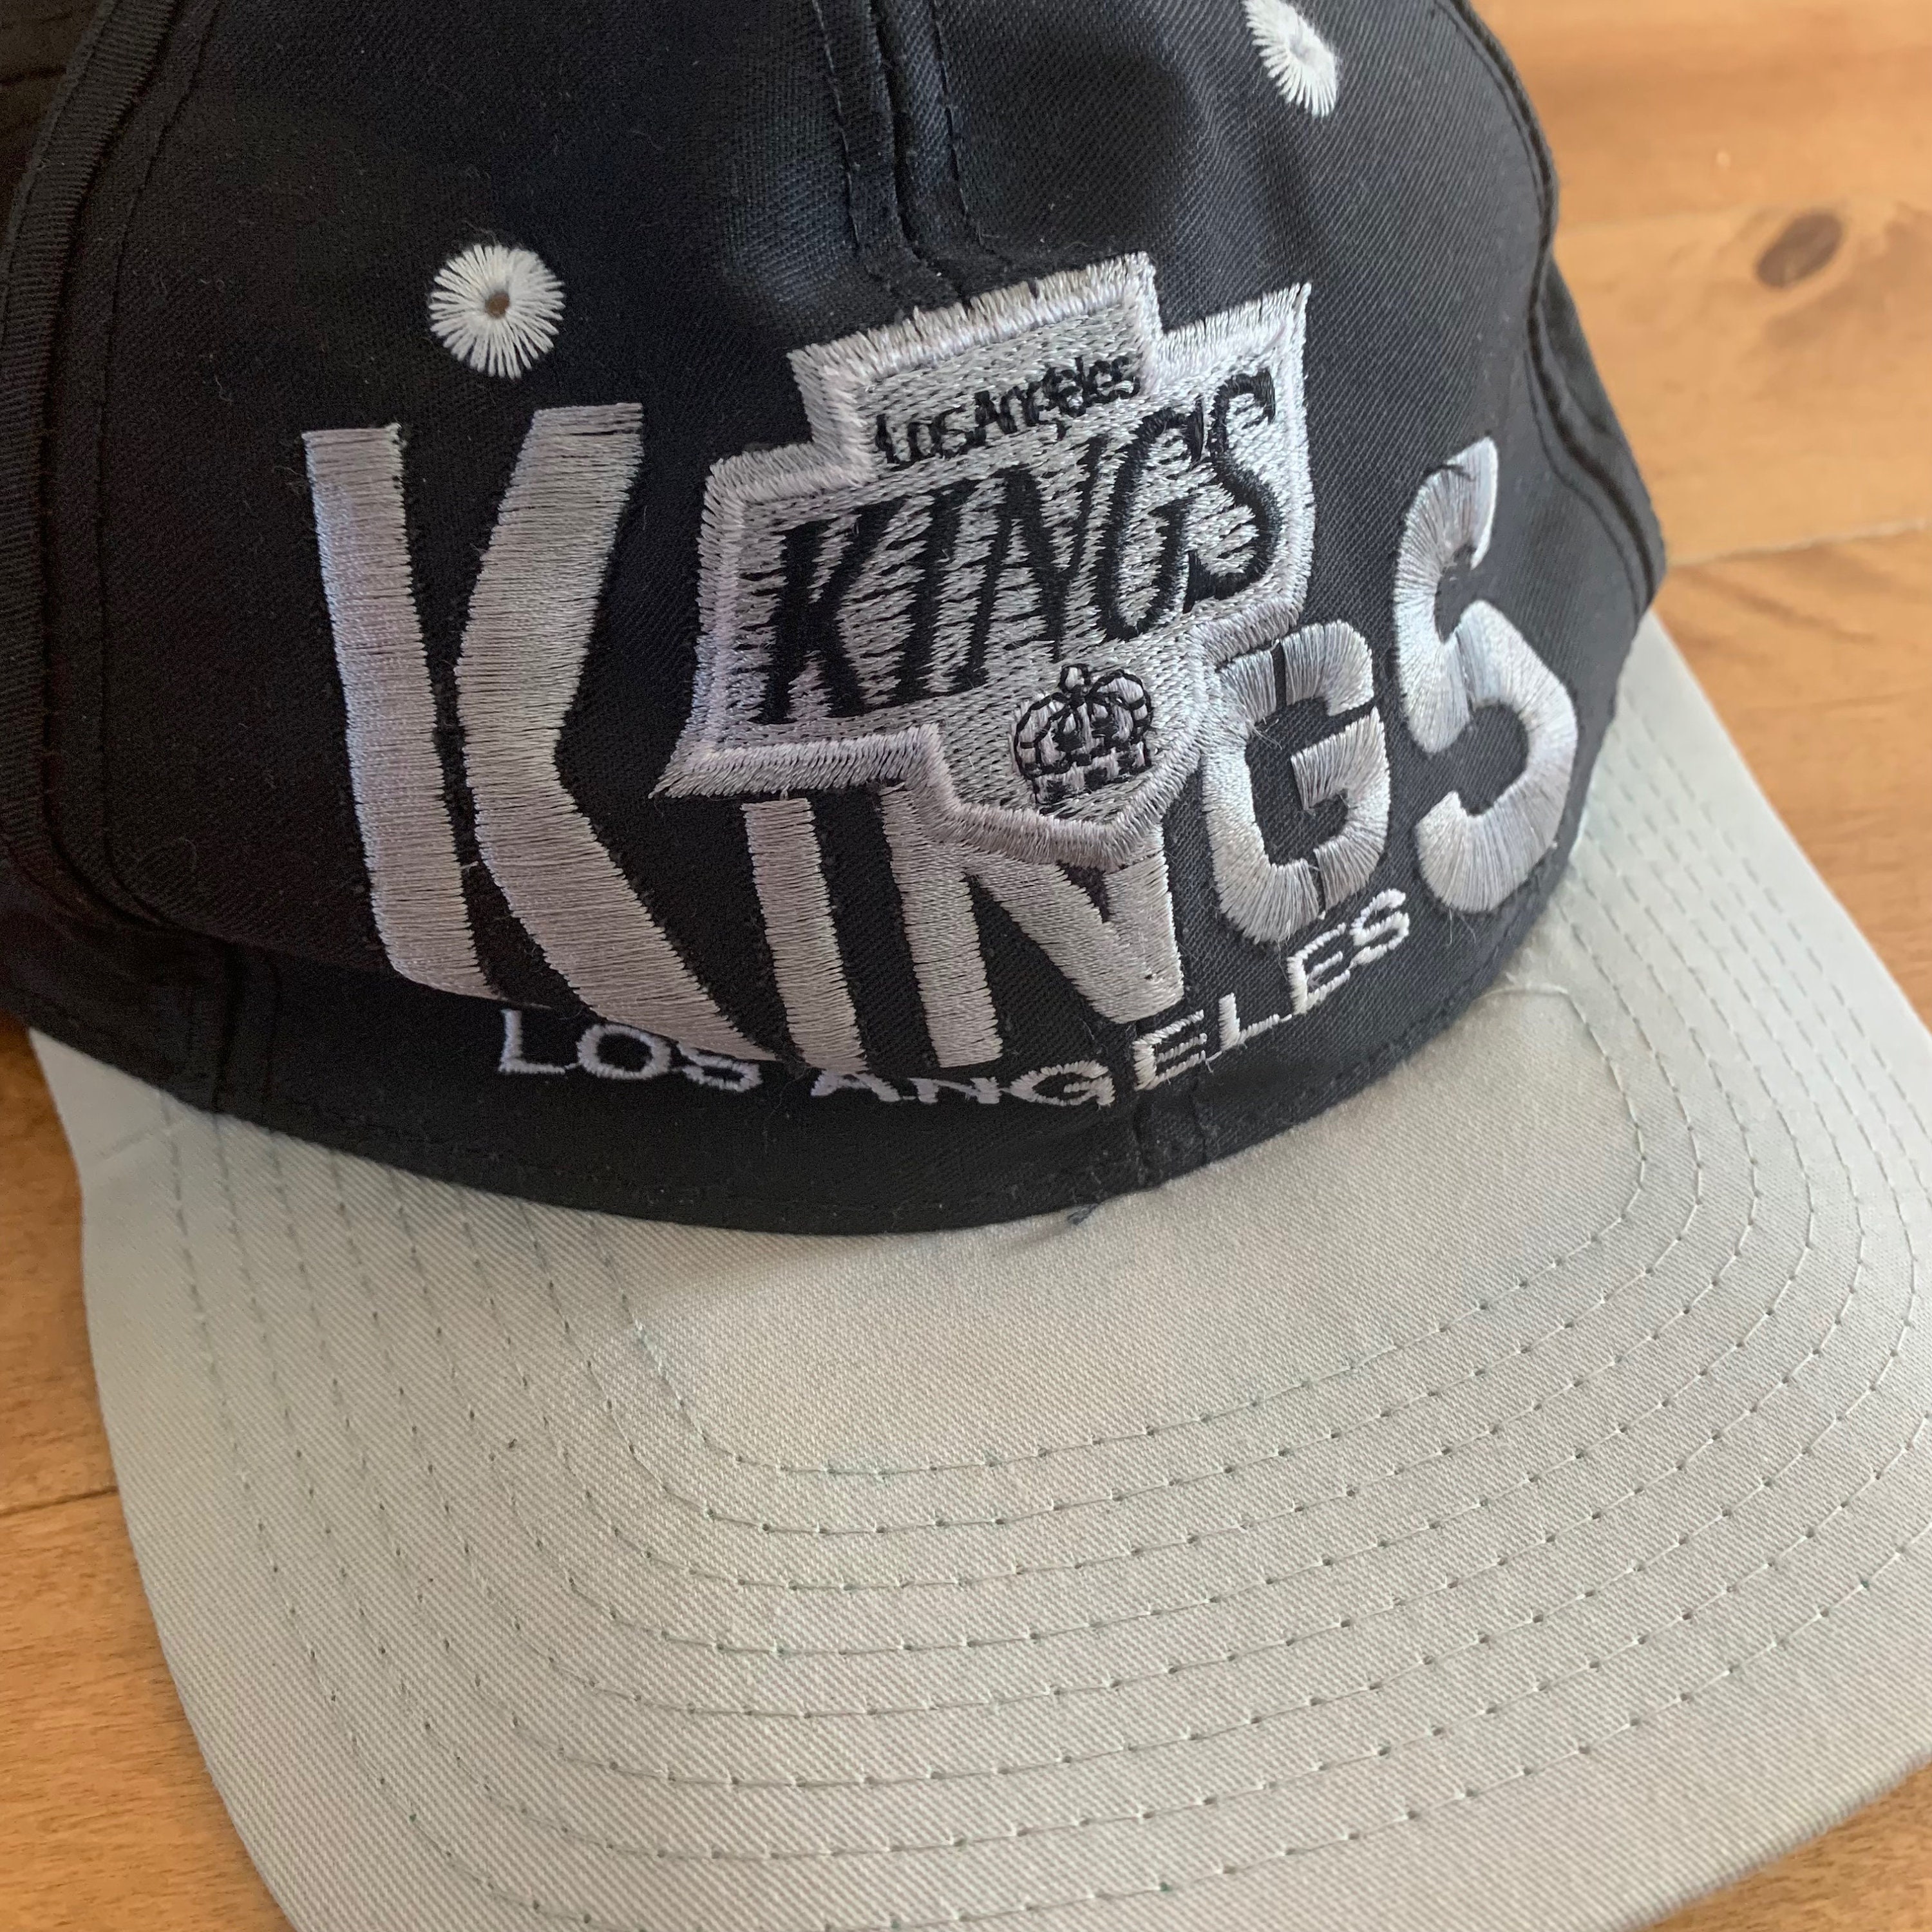 Vintage Style La Kings Trucker Hat 